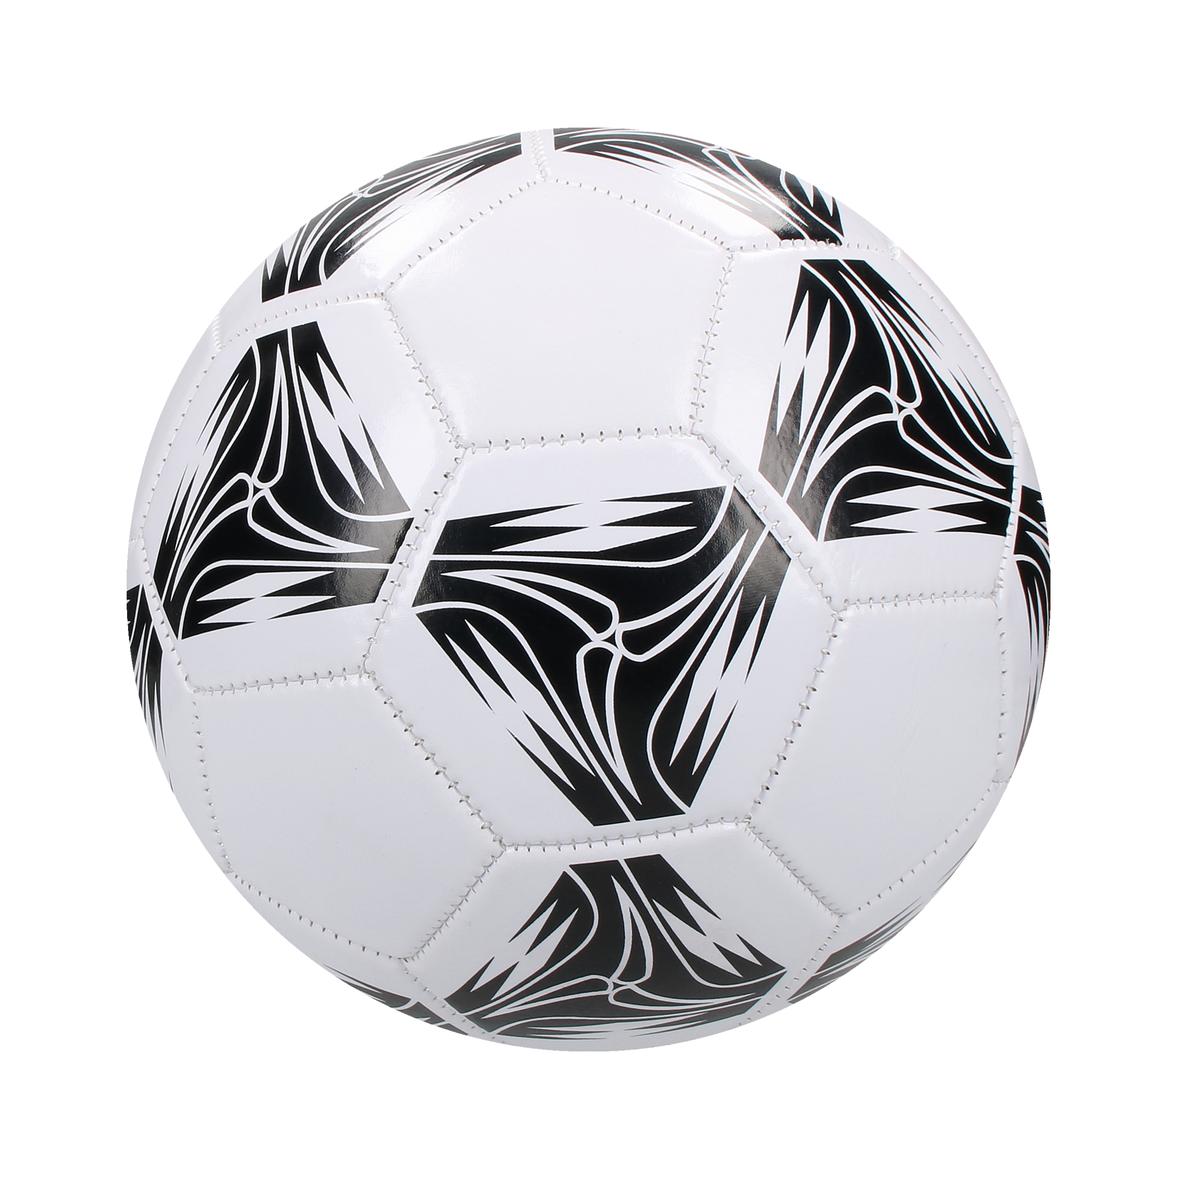 Pallone da calcio in PVC misura 5 - Locatello